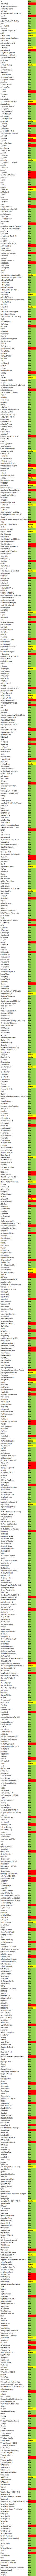 Liste des Tweak compatibles sur iPhone Jailbreak iOS 8.1.2